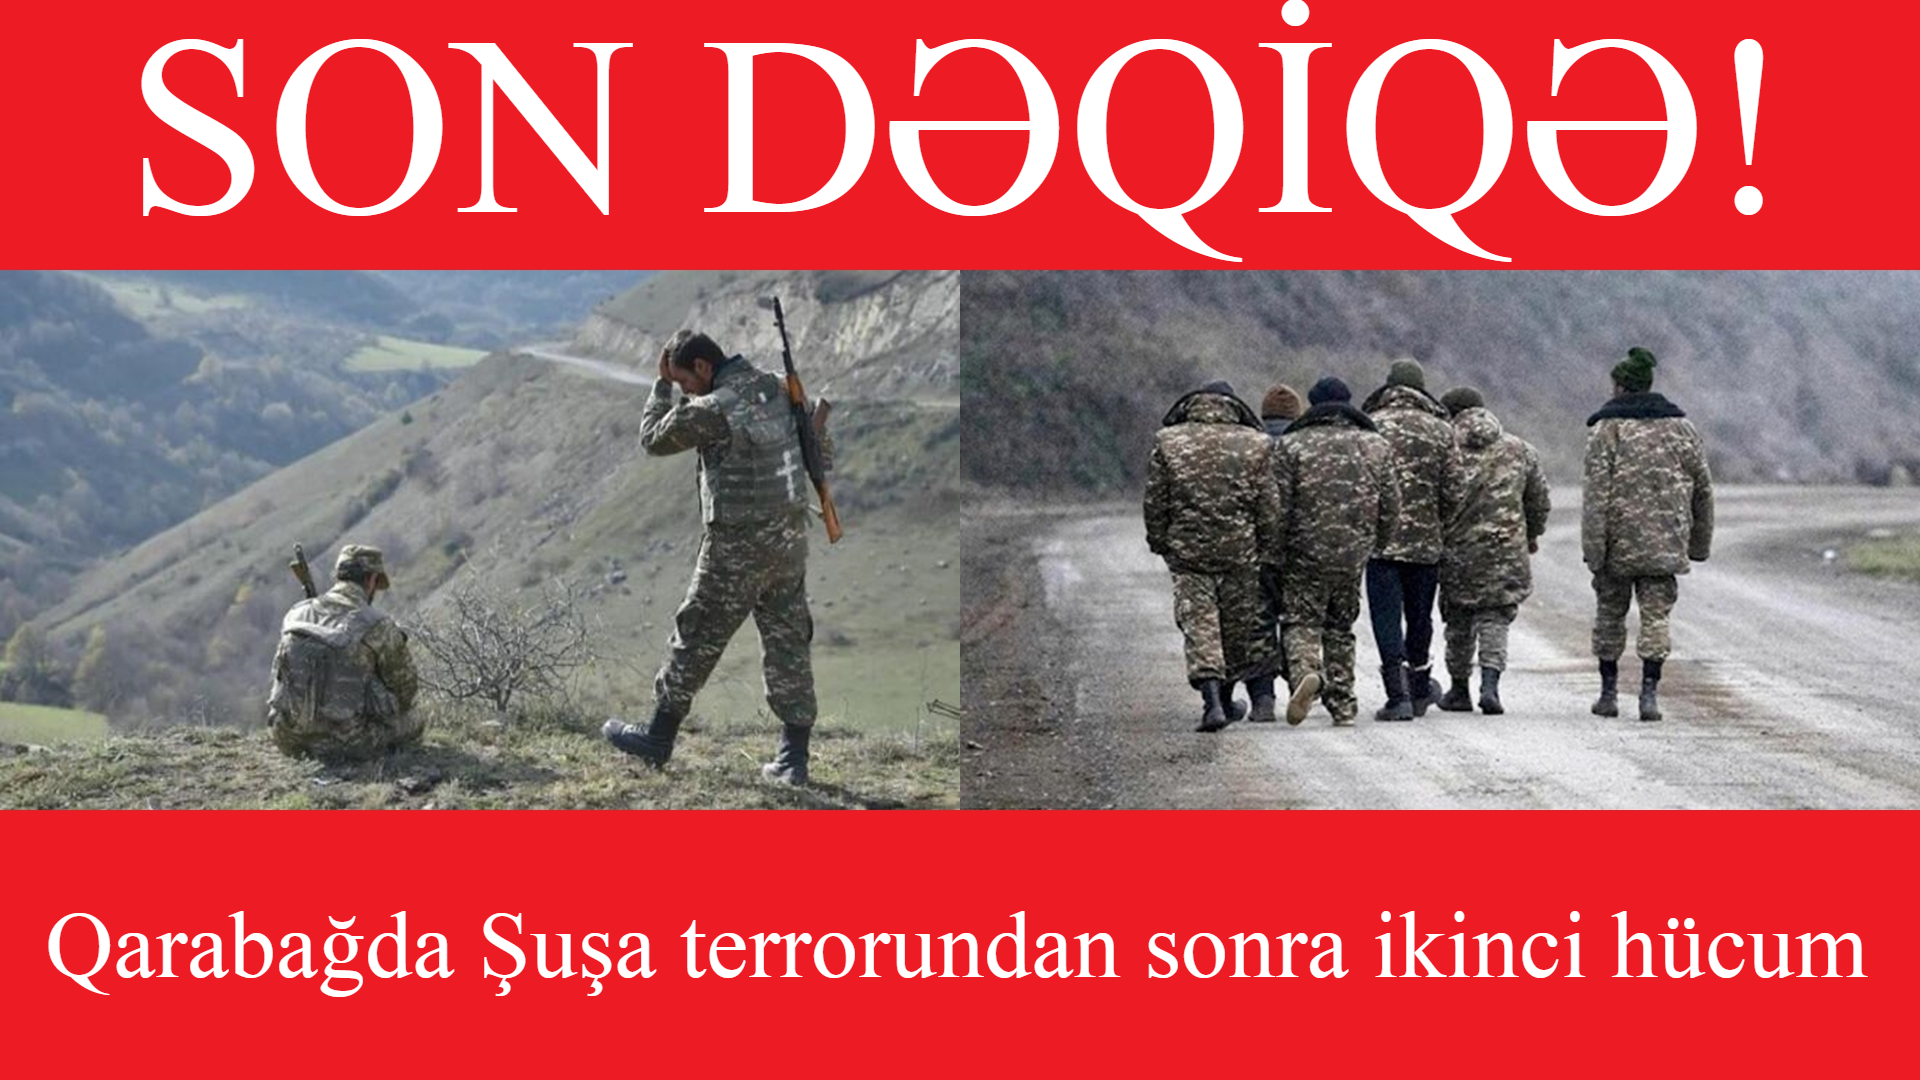 SON DƏQİQƏ! : Qarabağda Şuşa terrorundan sonra ikinci hücum..